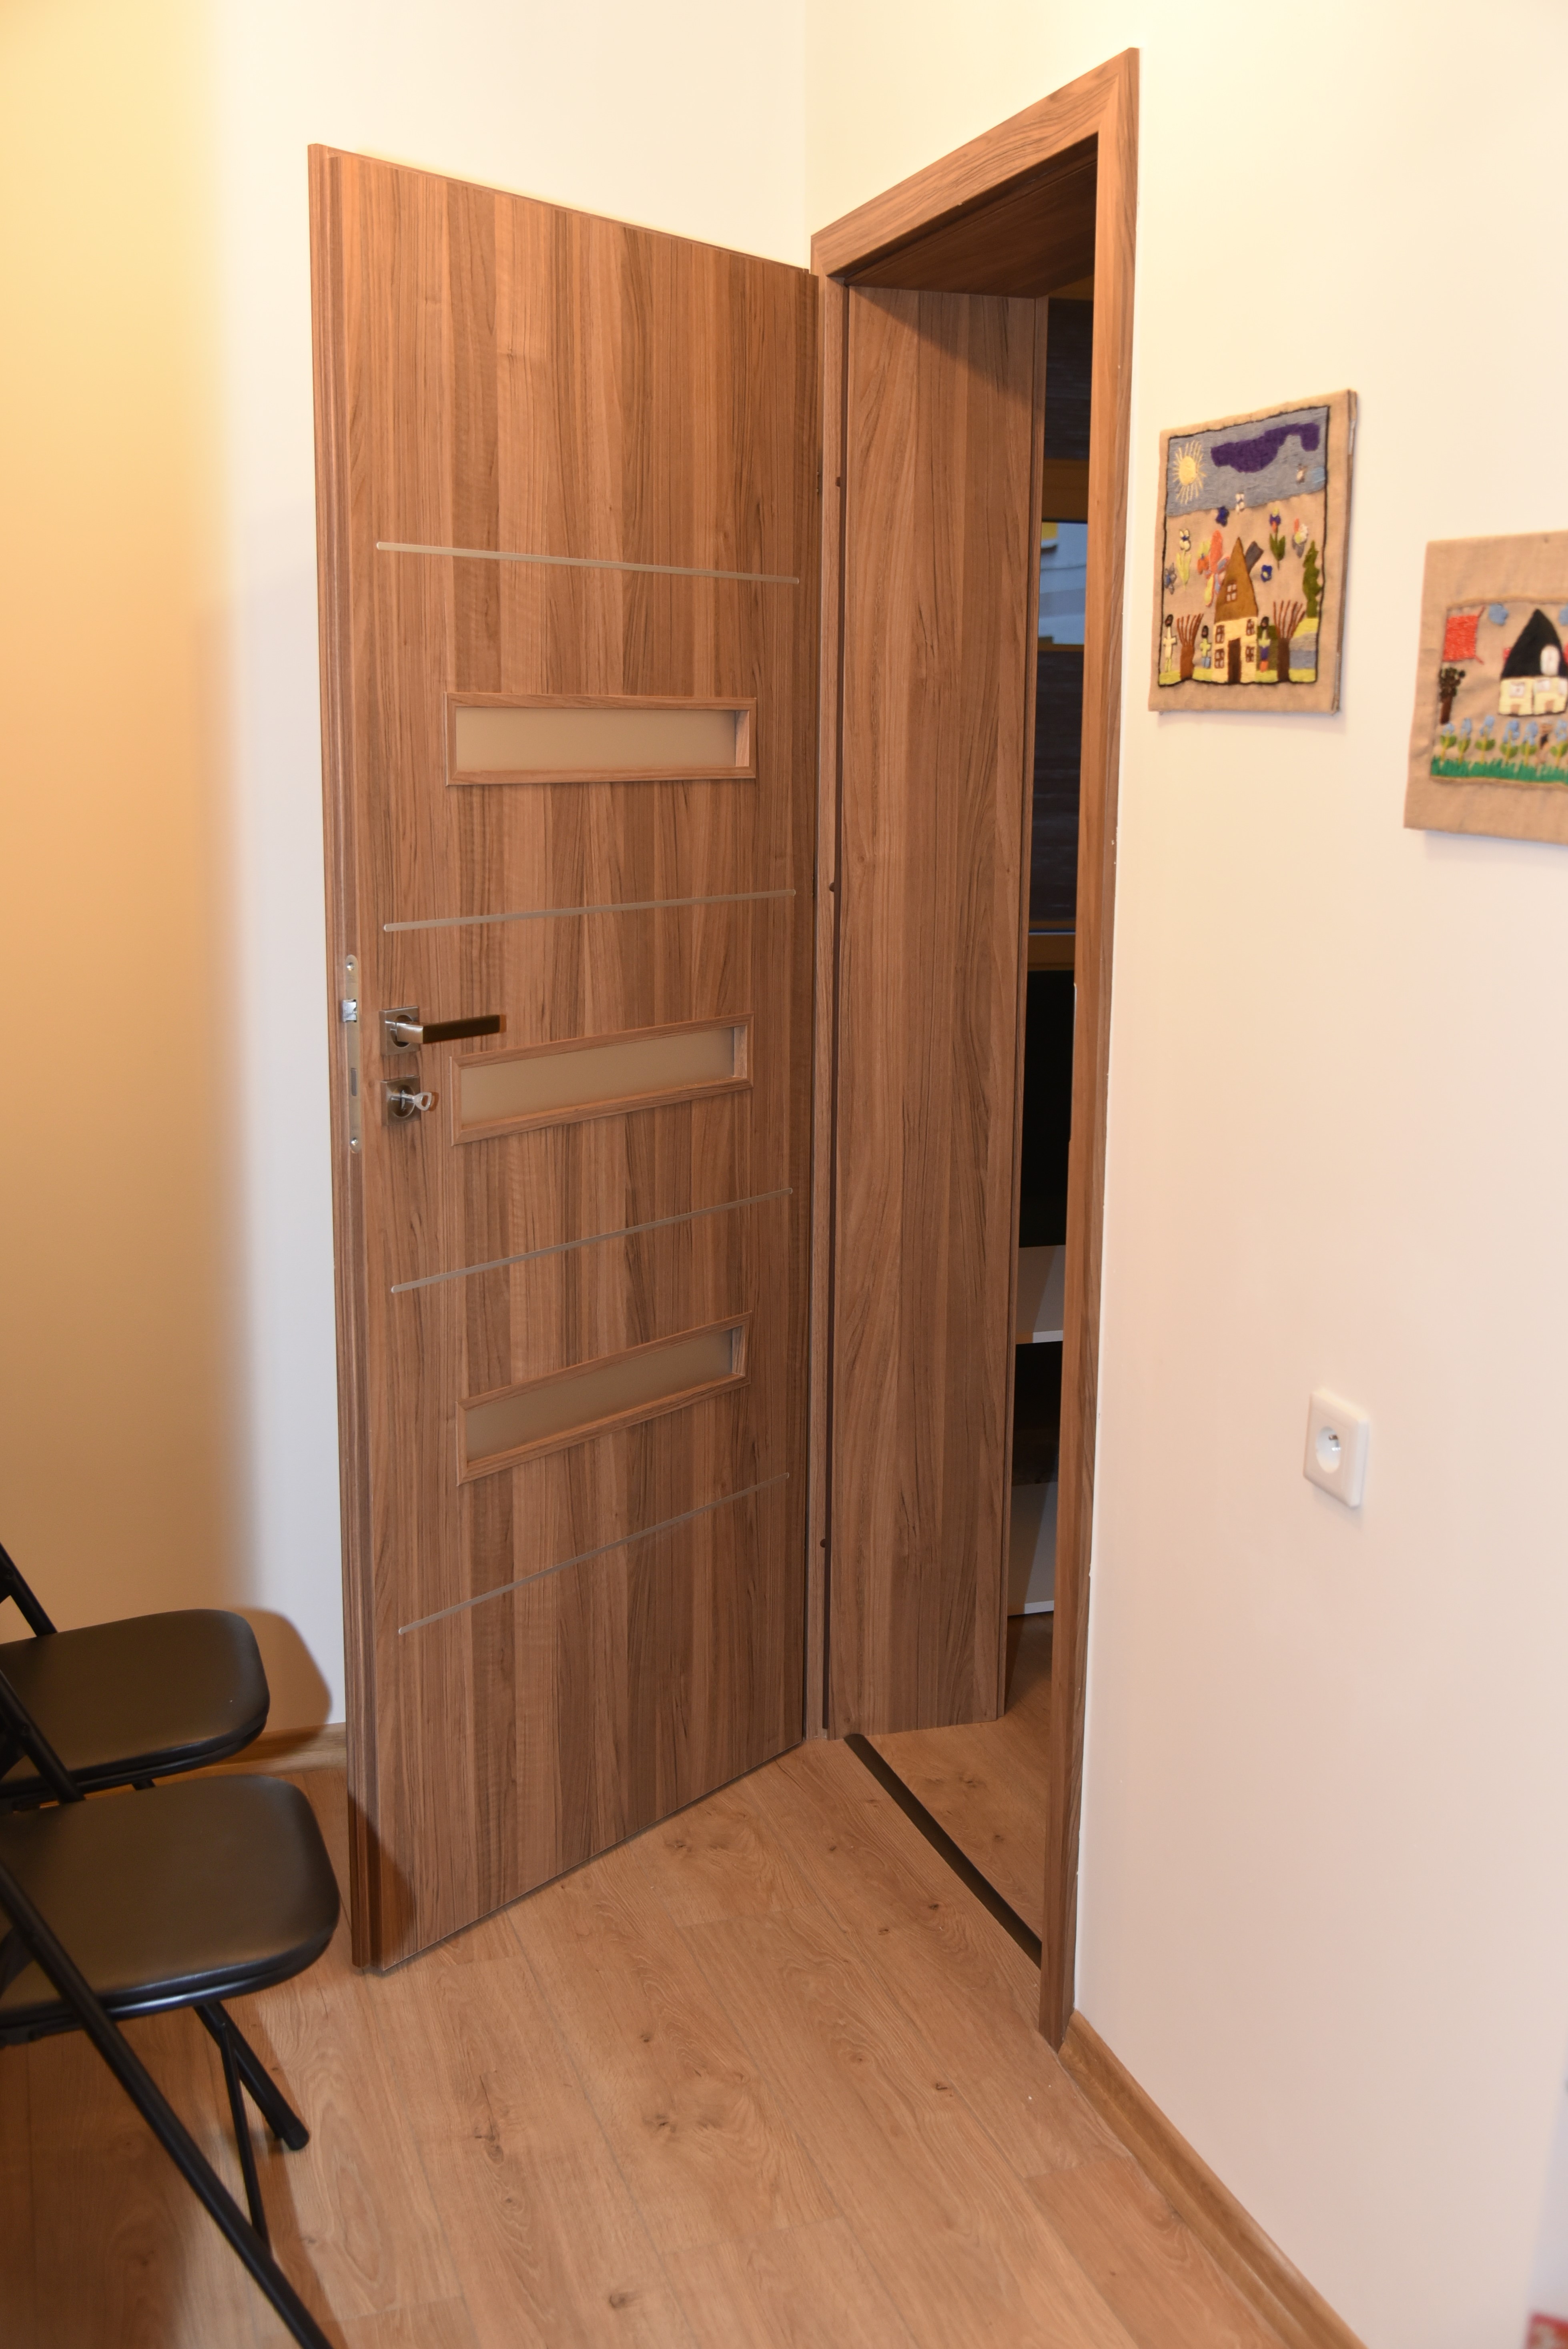 Zdjęcie przedstawiajace korytarz oraz otwarte drzwi priowadzace do jednego z pomieszczeń w nowym Ośrodku Interwencji Kryzysowej